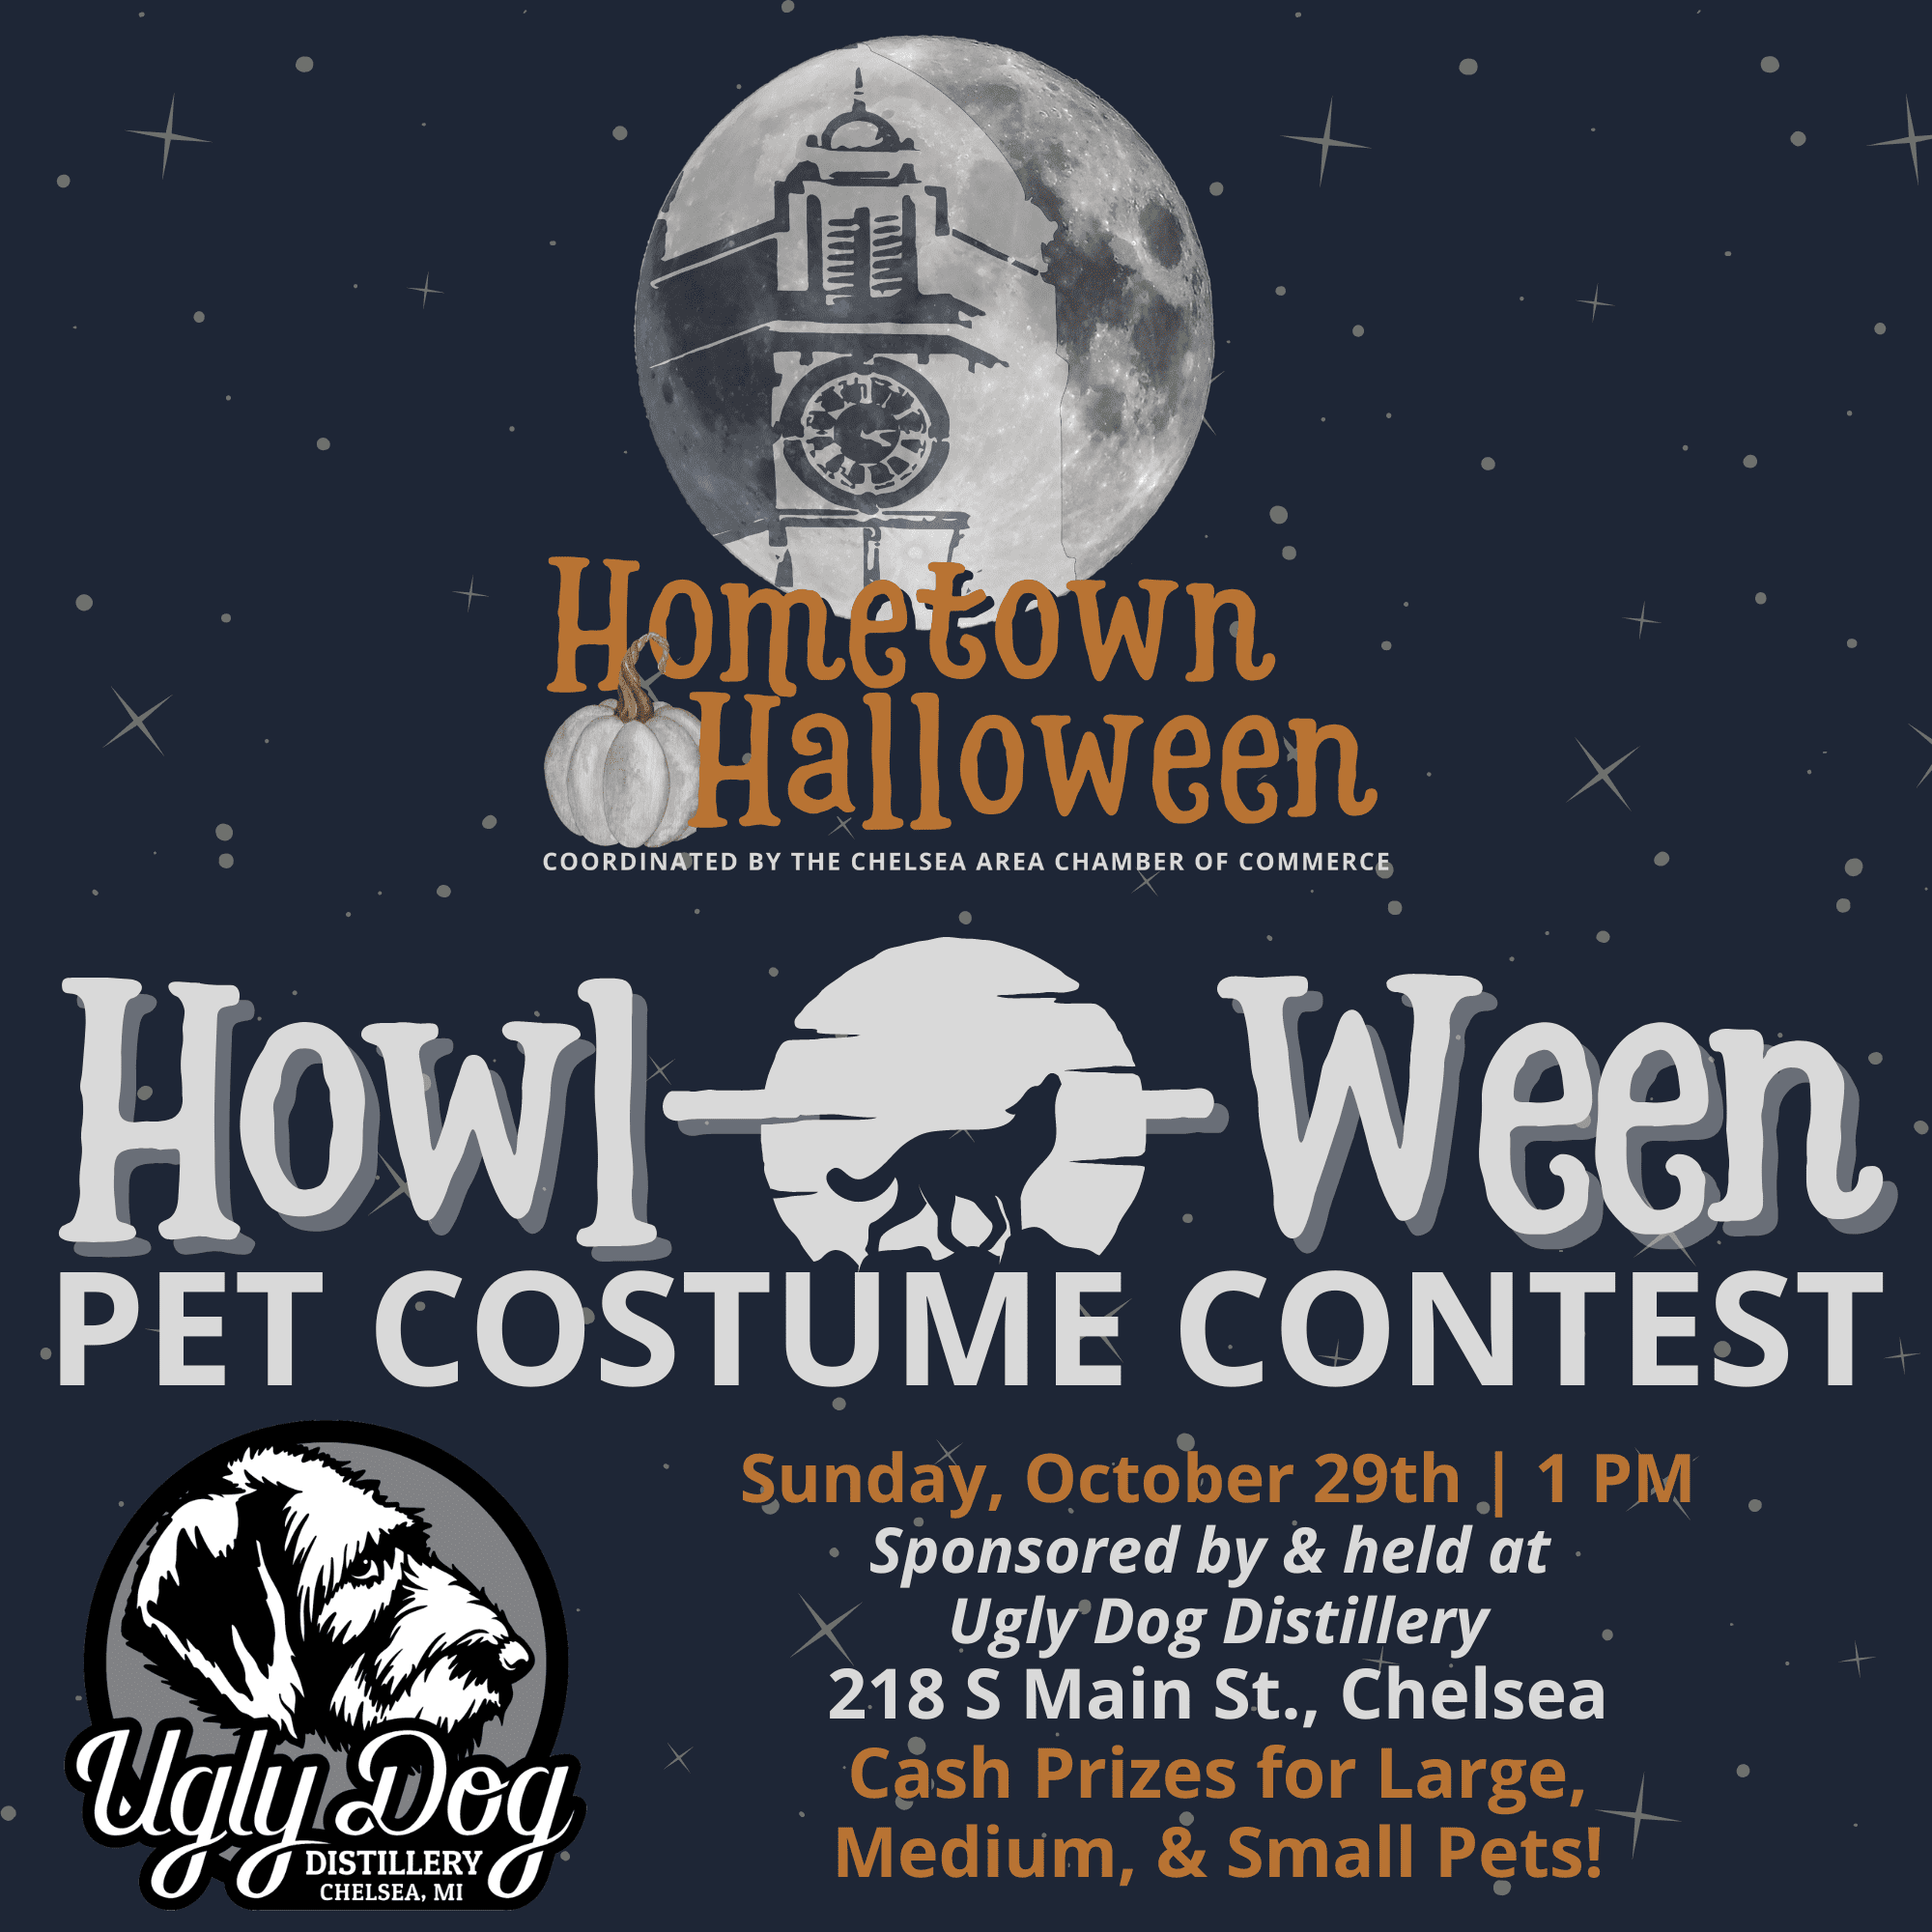 Howl-o-ween Pet Costume Contest Flyer Halloween Dog Pet 